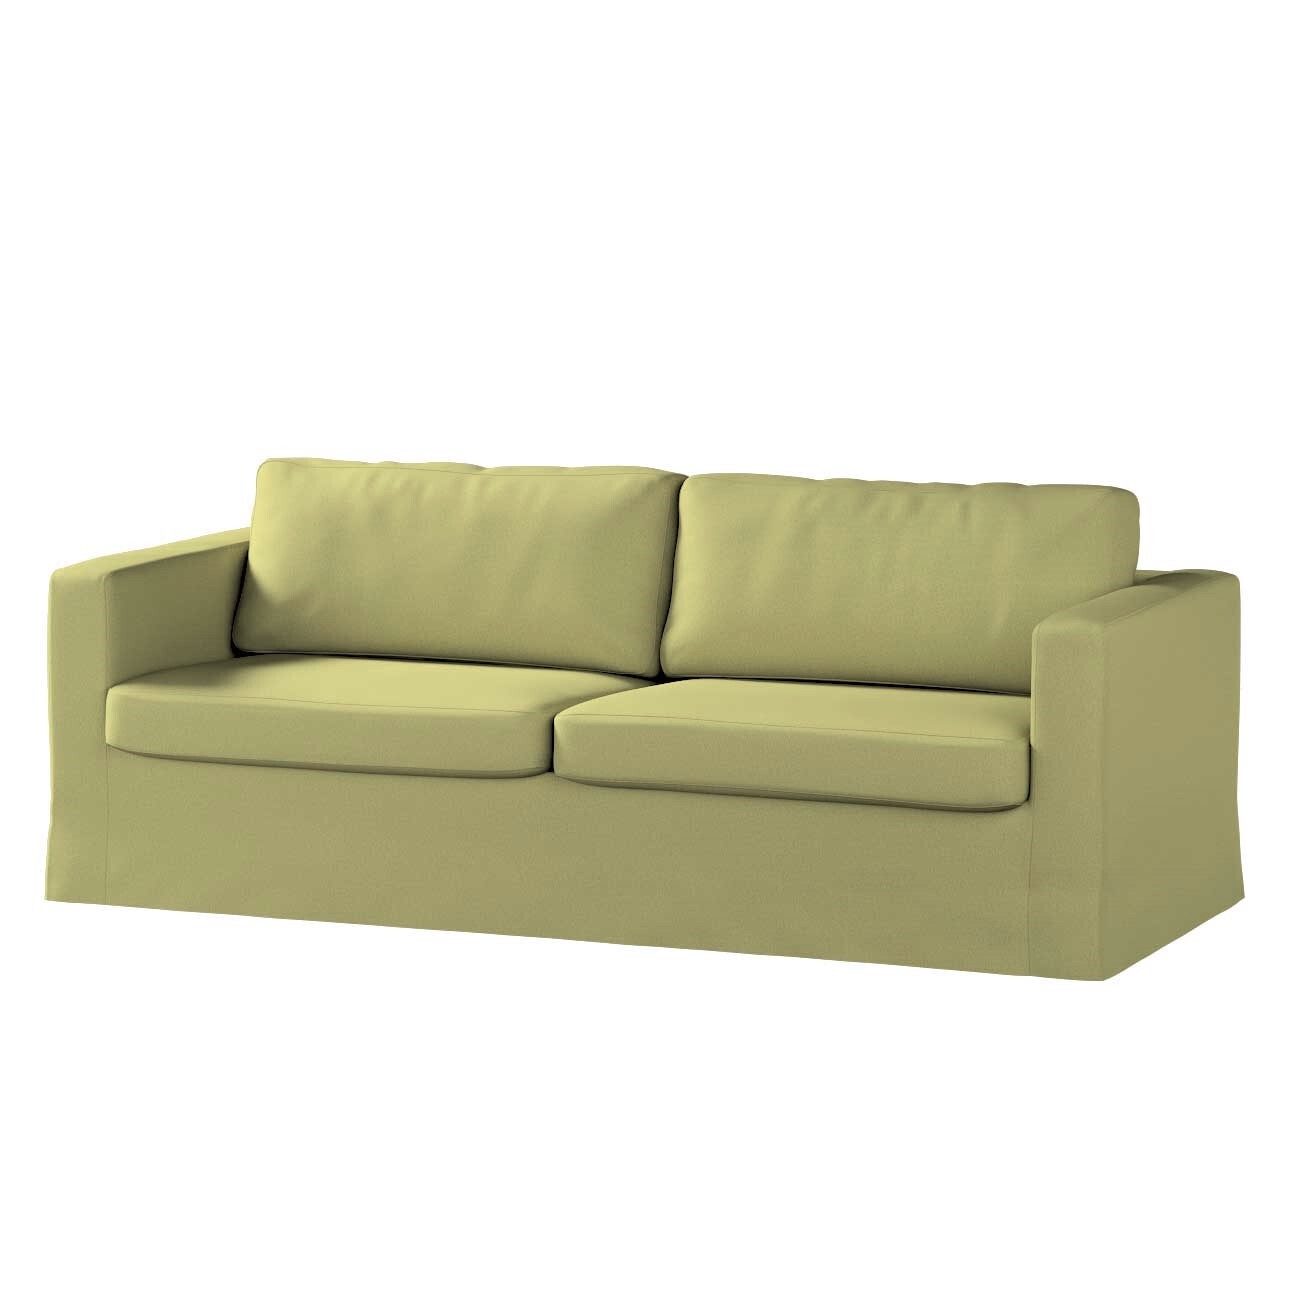 Bezug für Karlstad 3-Sitzer Sofa nicht ausklappbar, lang, salbeigrün, Bezug günstig online kaufen